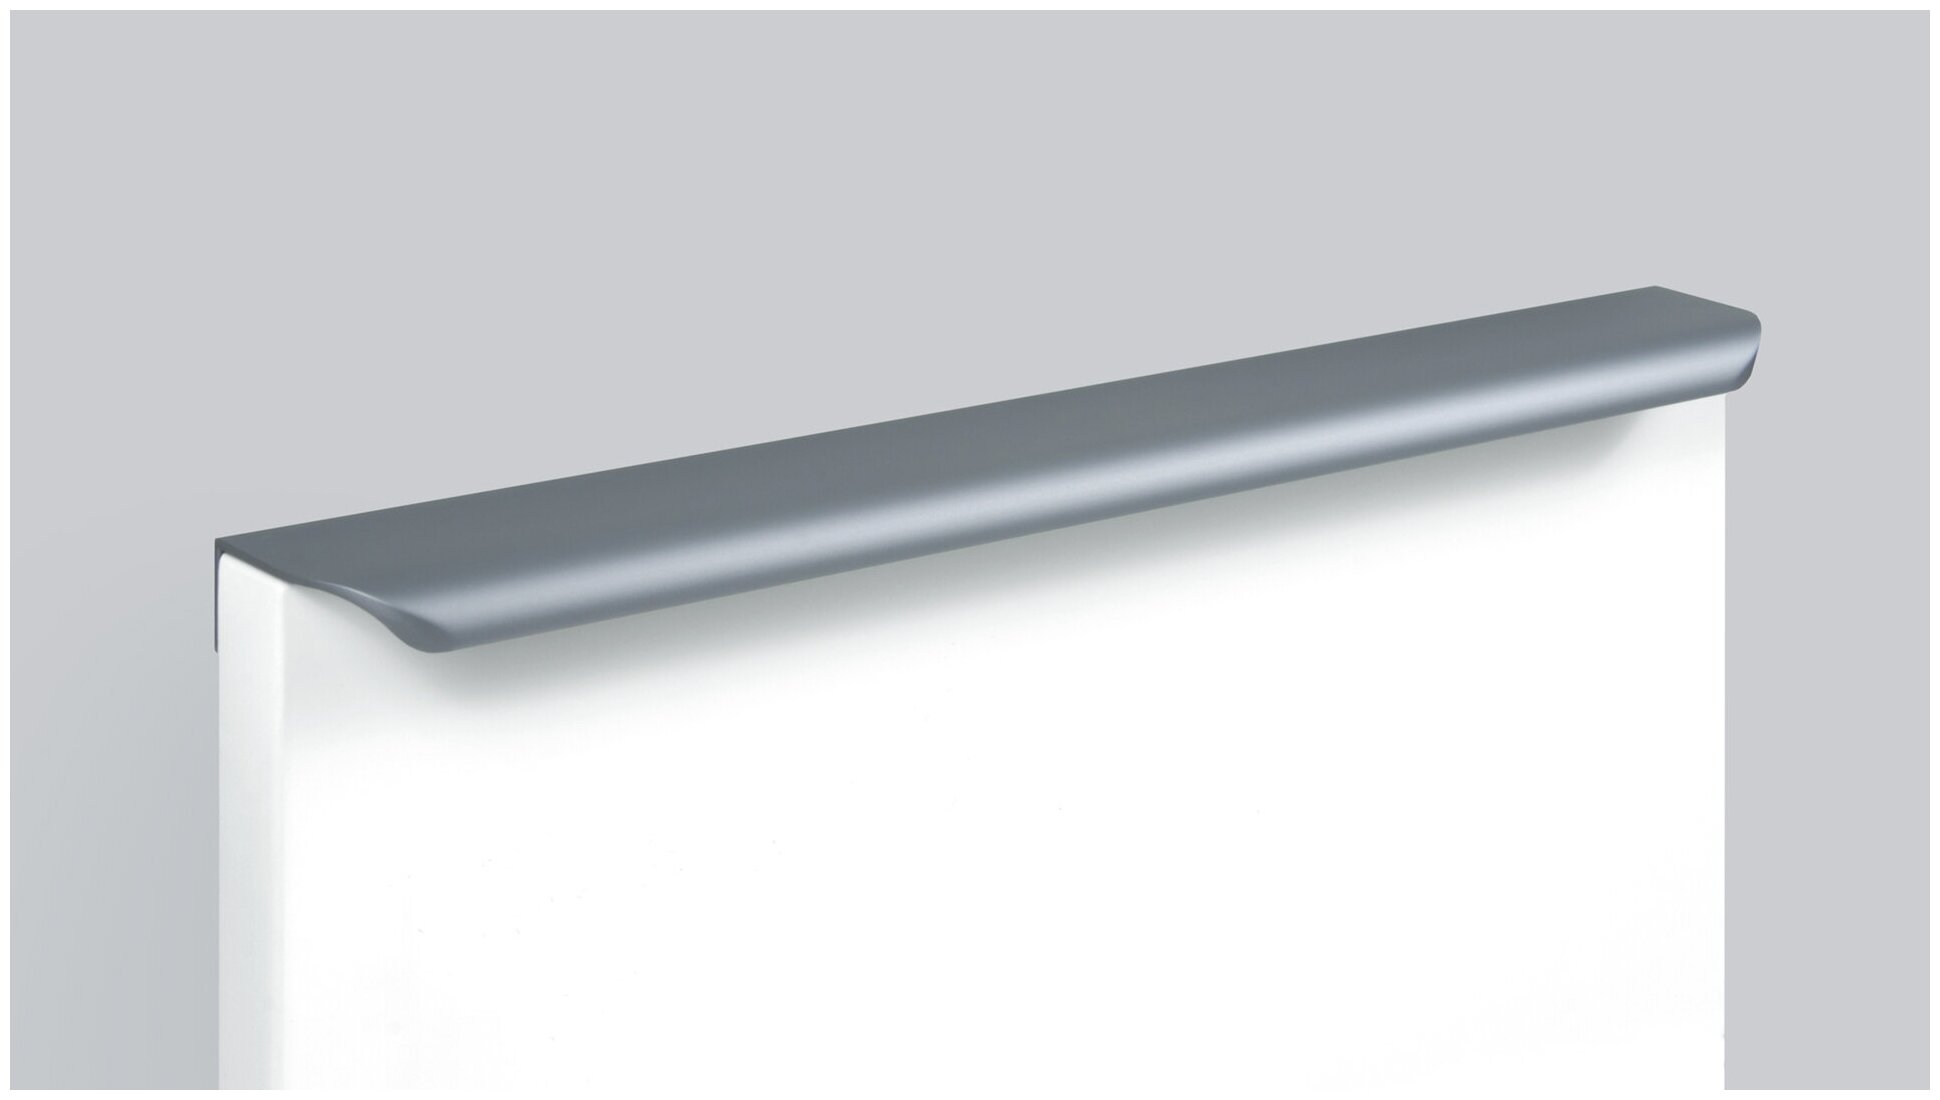 Мебельная ручка торцевая MONTE, длина - 297 мм, установочный размер - 224 мм, цвет - Серый, алюминий, RT110GR